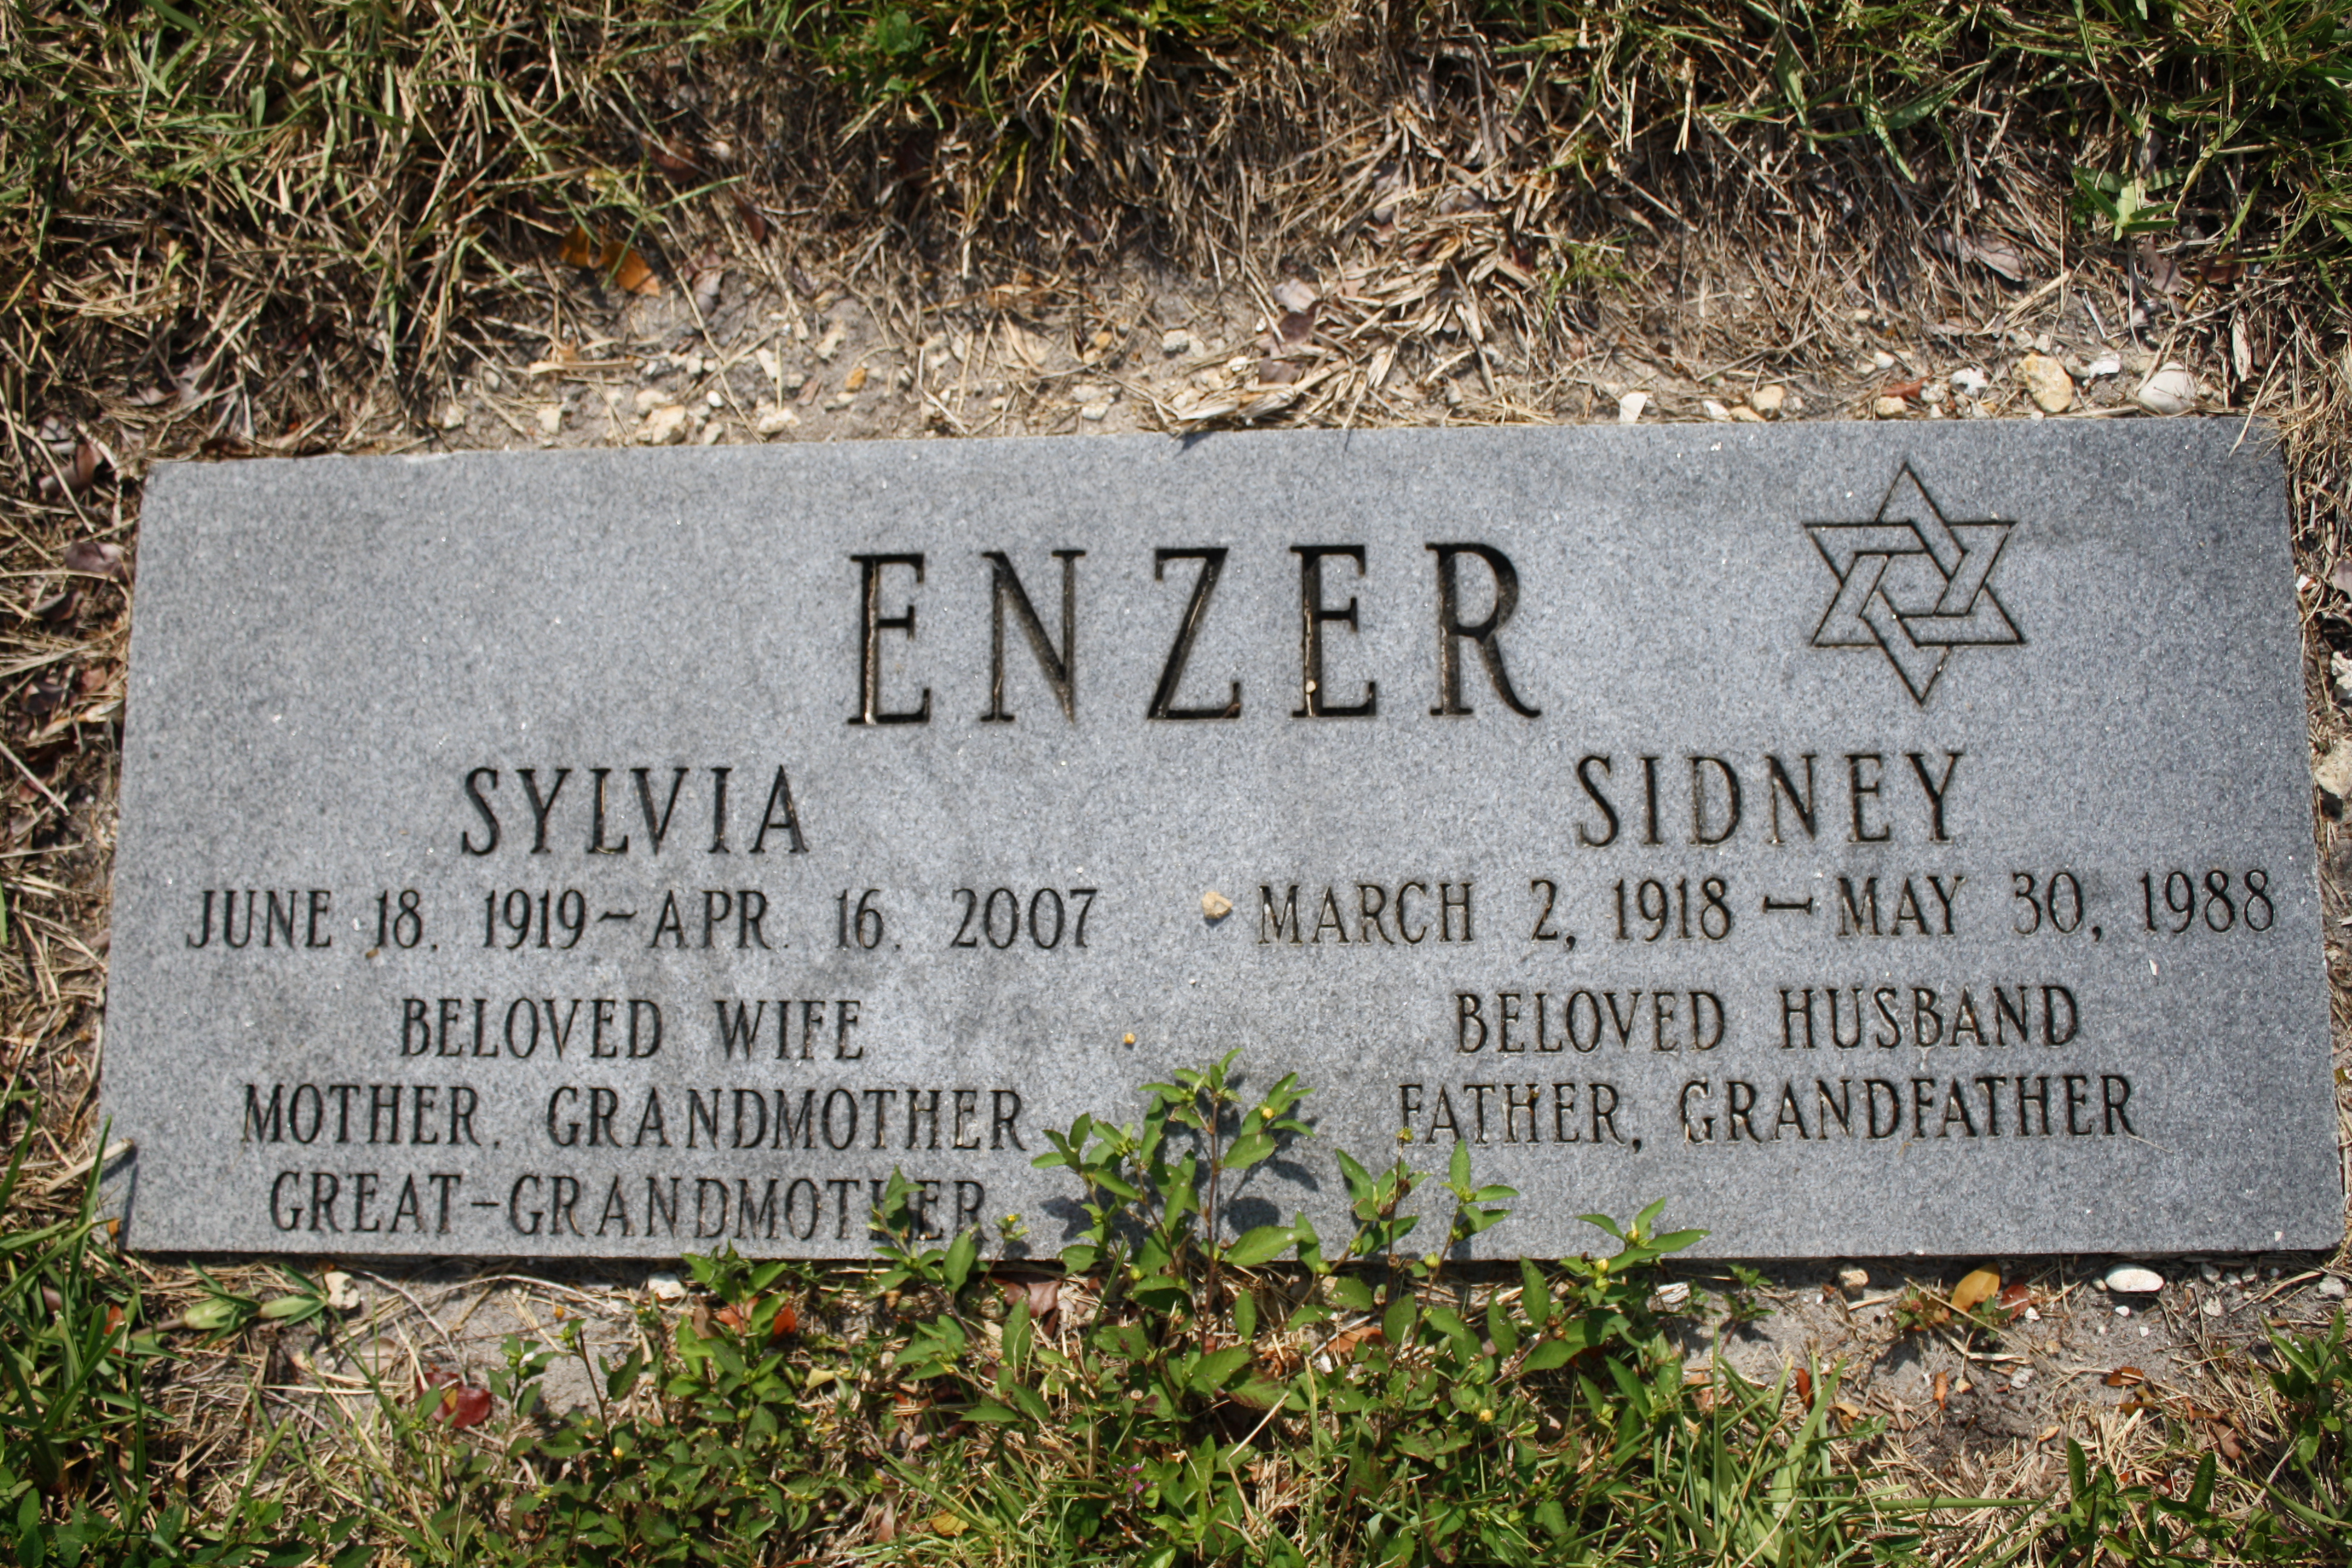 Sidney Enzer